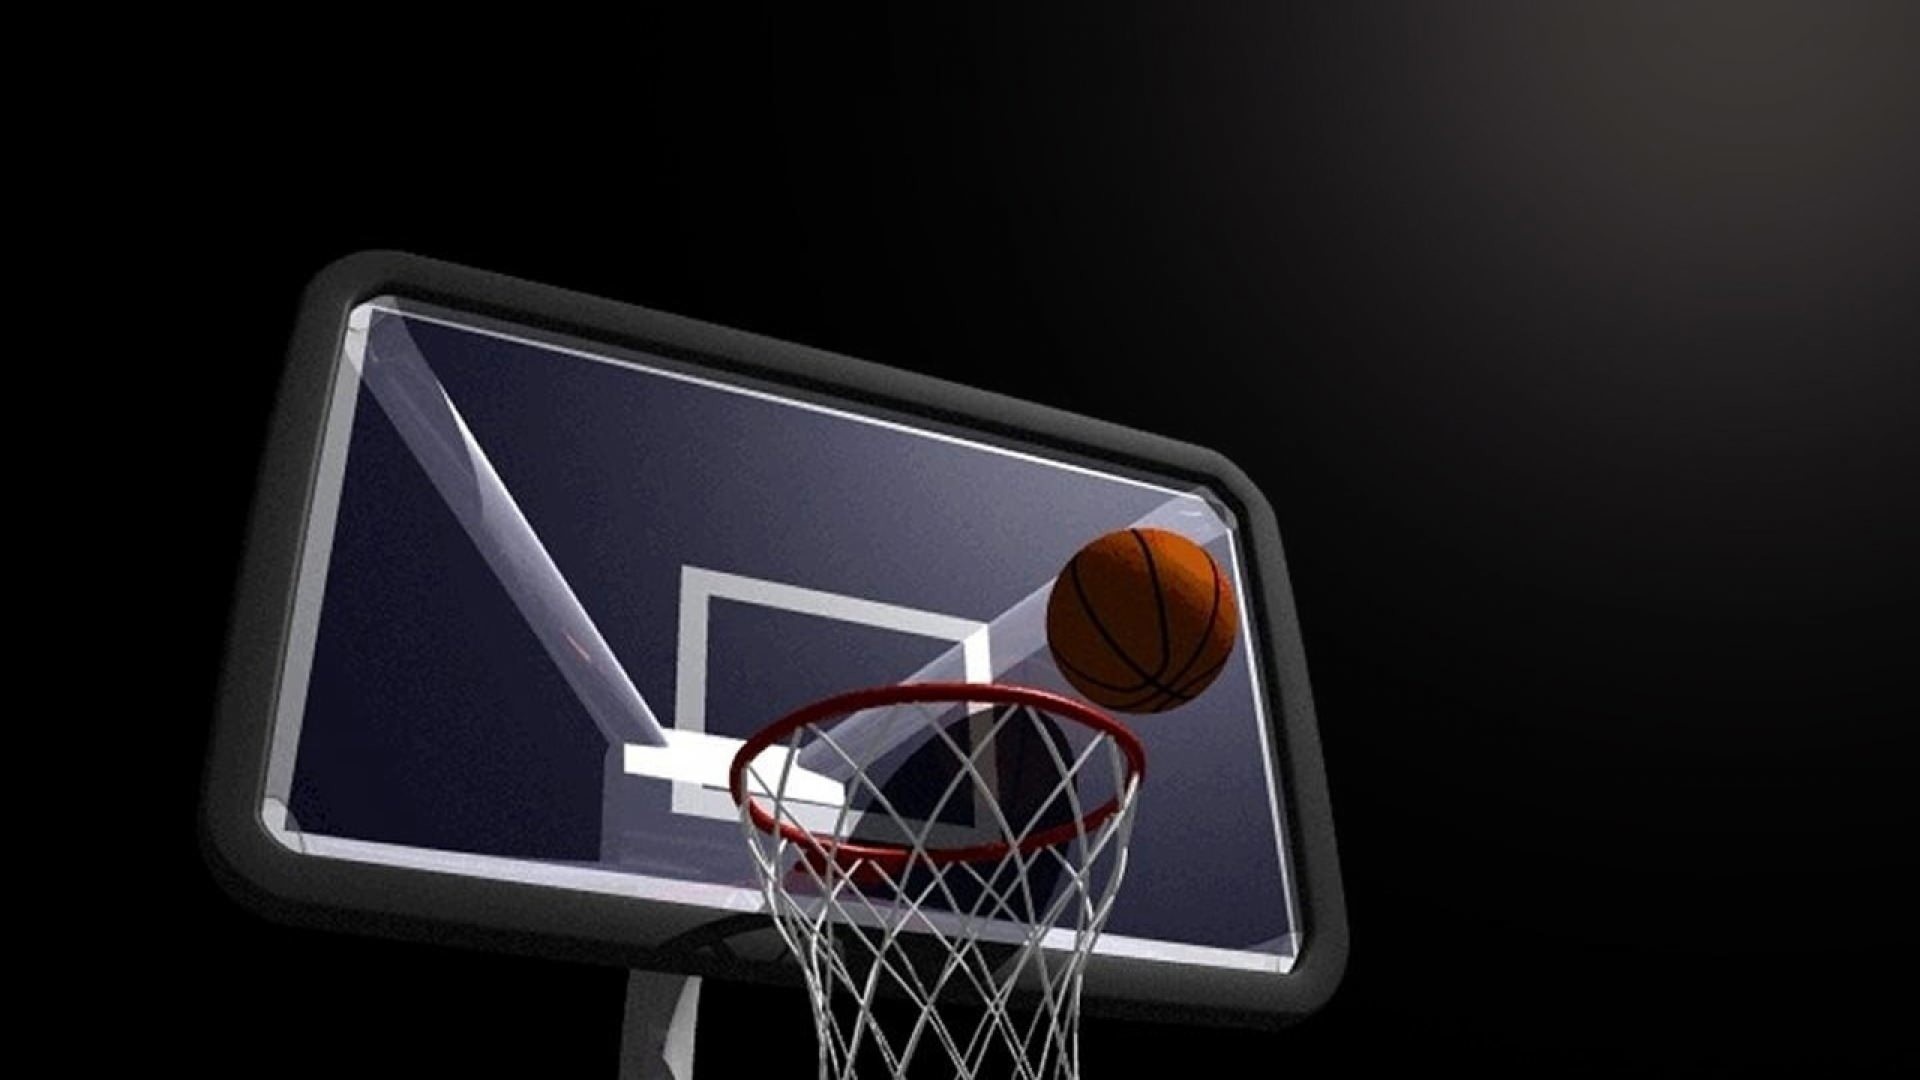 Basketball Is Life Wallpaper - Basketball Ball Wallpaper Hd , HD Wallpaper & Backgrounds